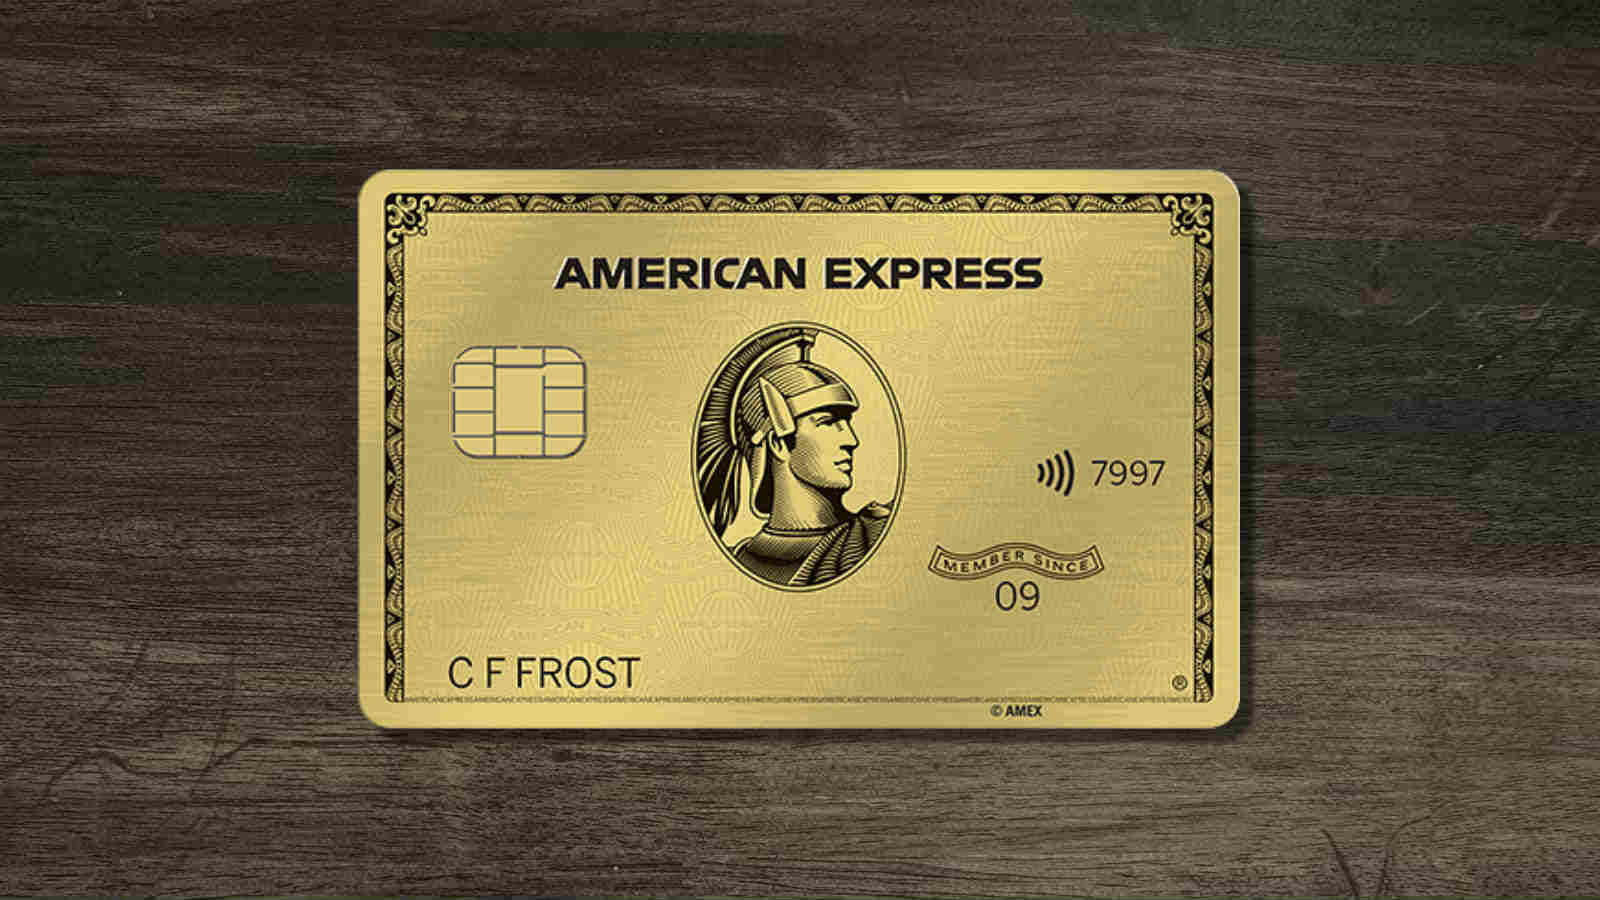 Americanexpress - Ihr Partner Für Unvergleichliche Belohnungen Und Überlegene Sicherheit.